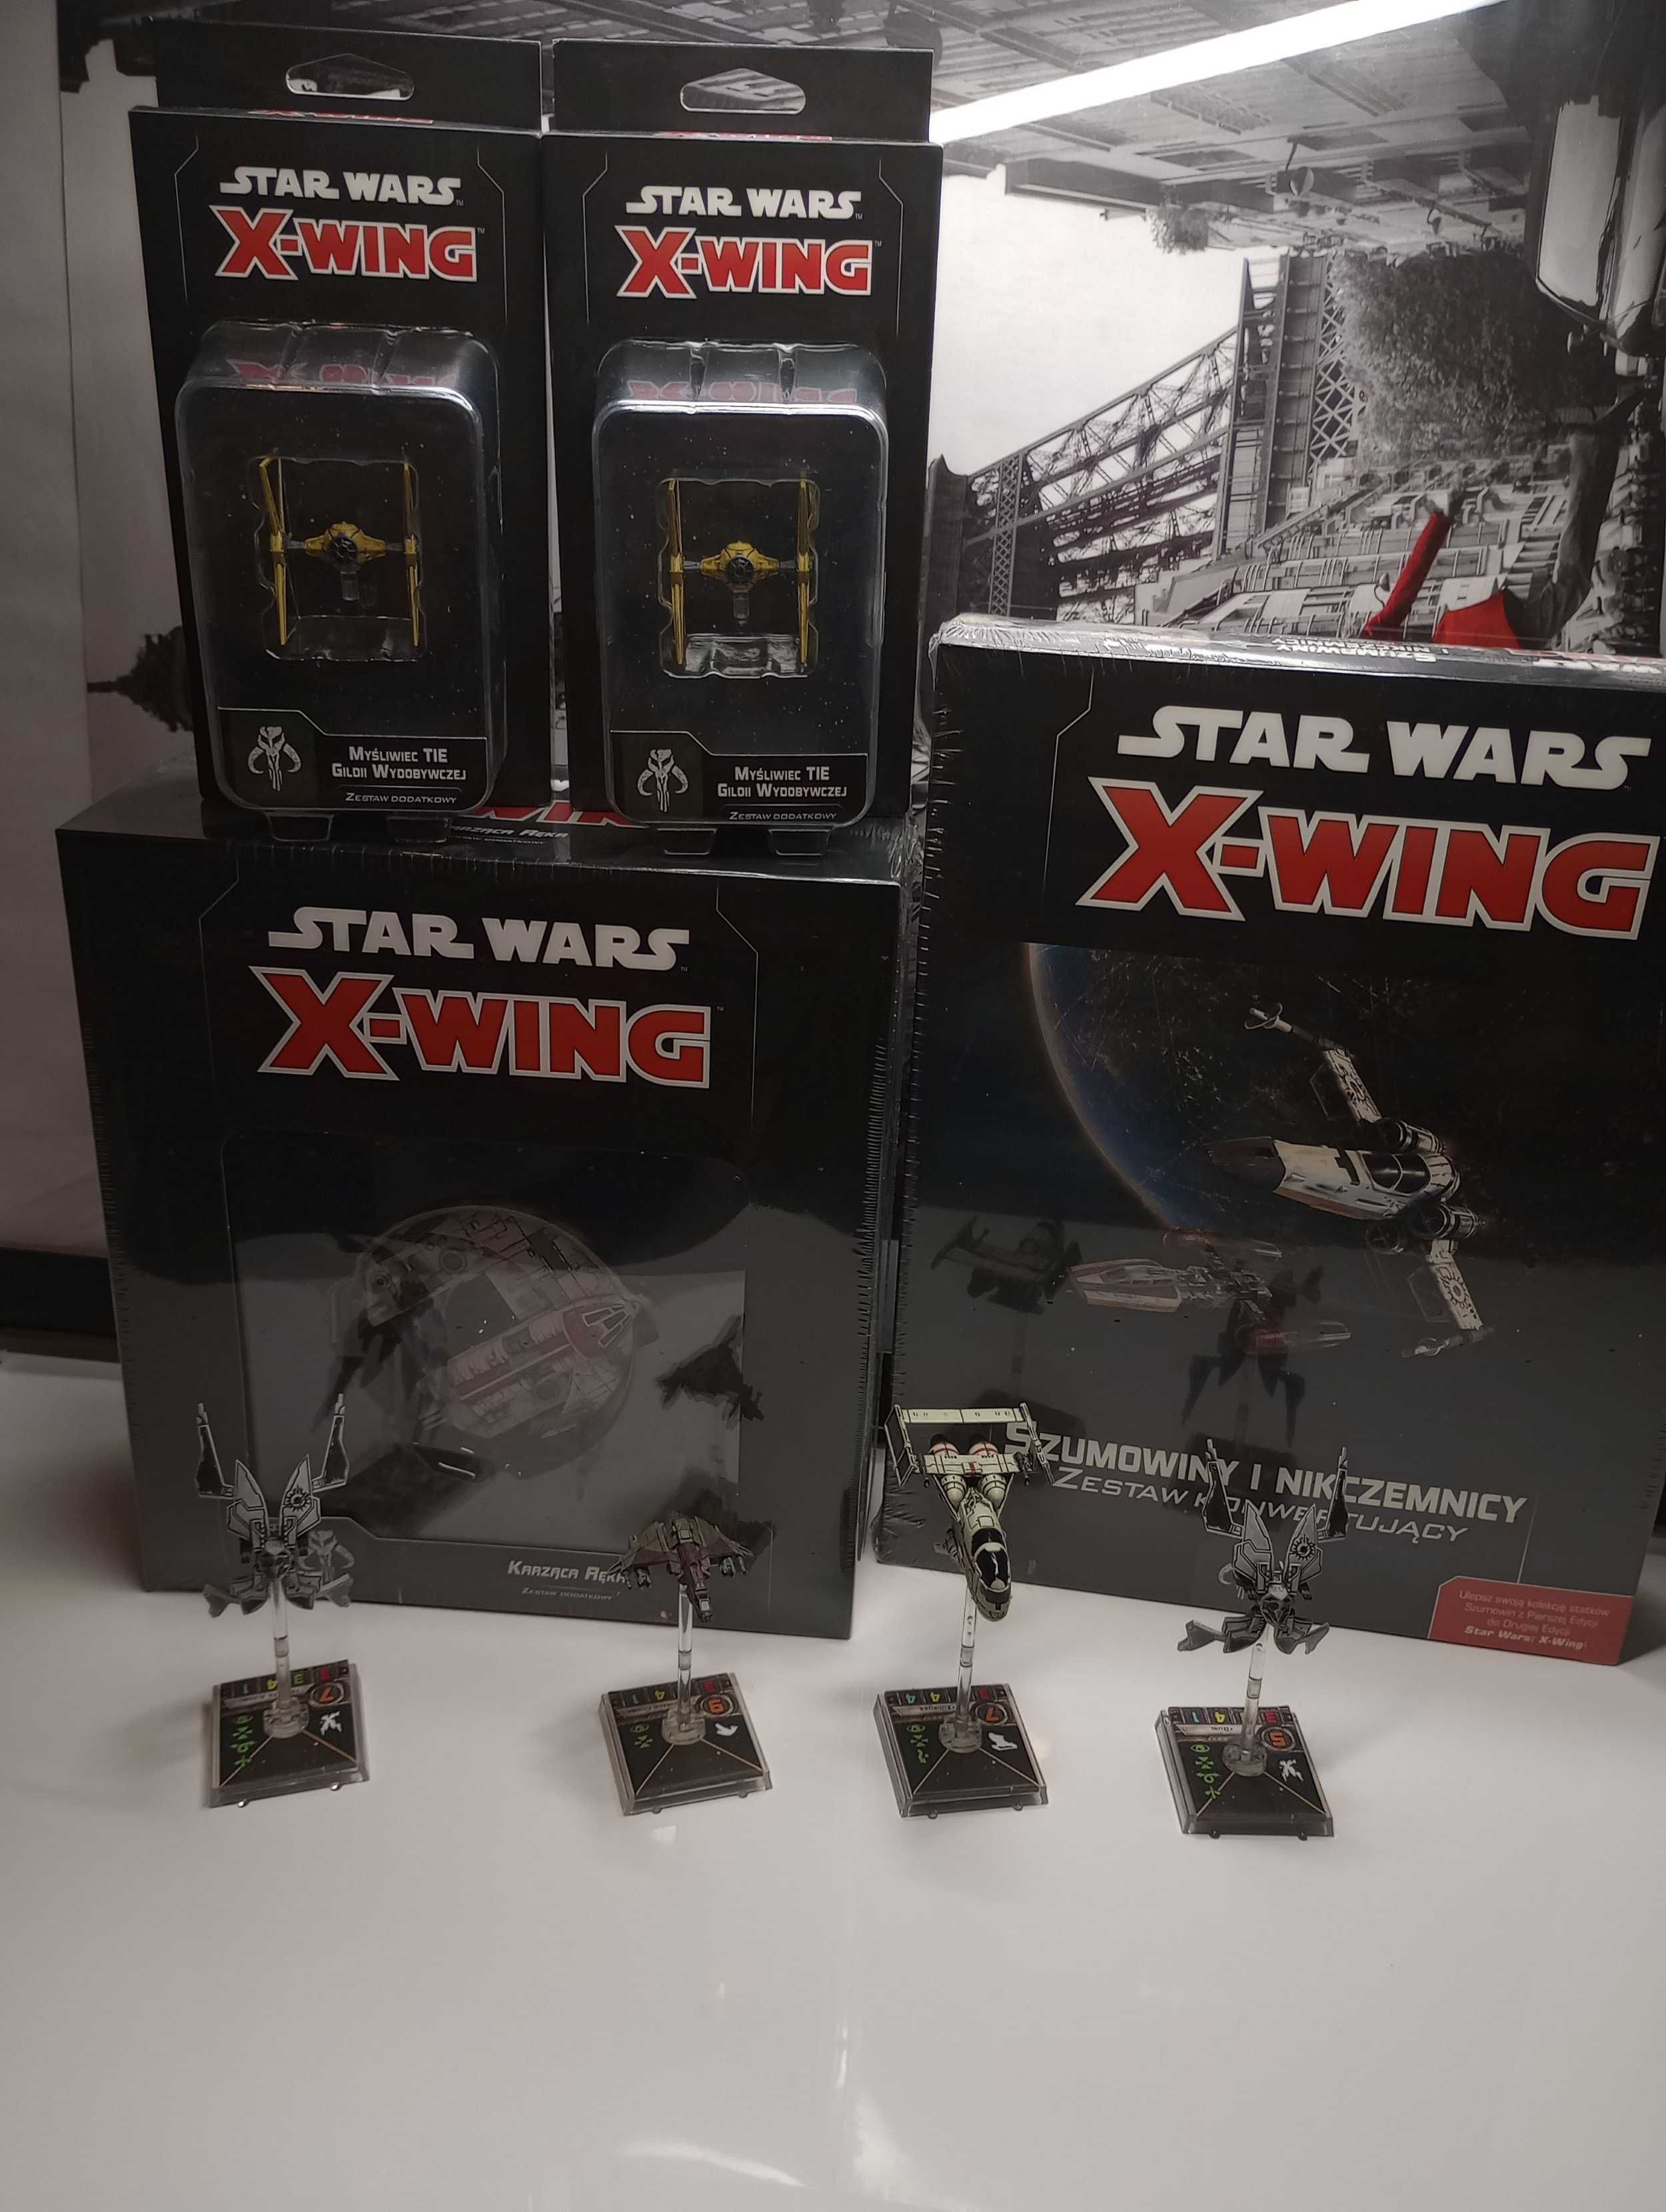 X-wing 2.0 gra figurkowa szumowiny i zestaw konwertujący